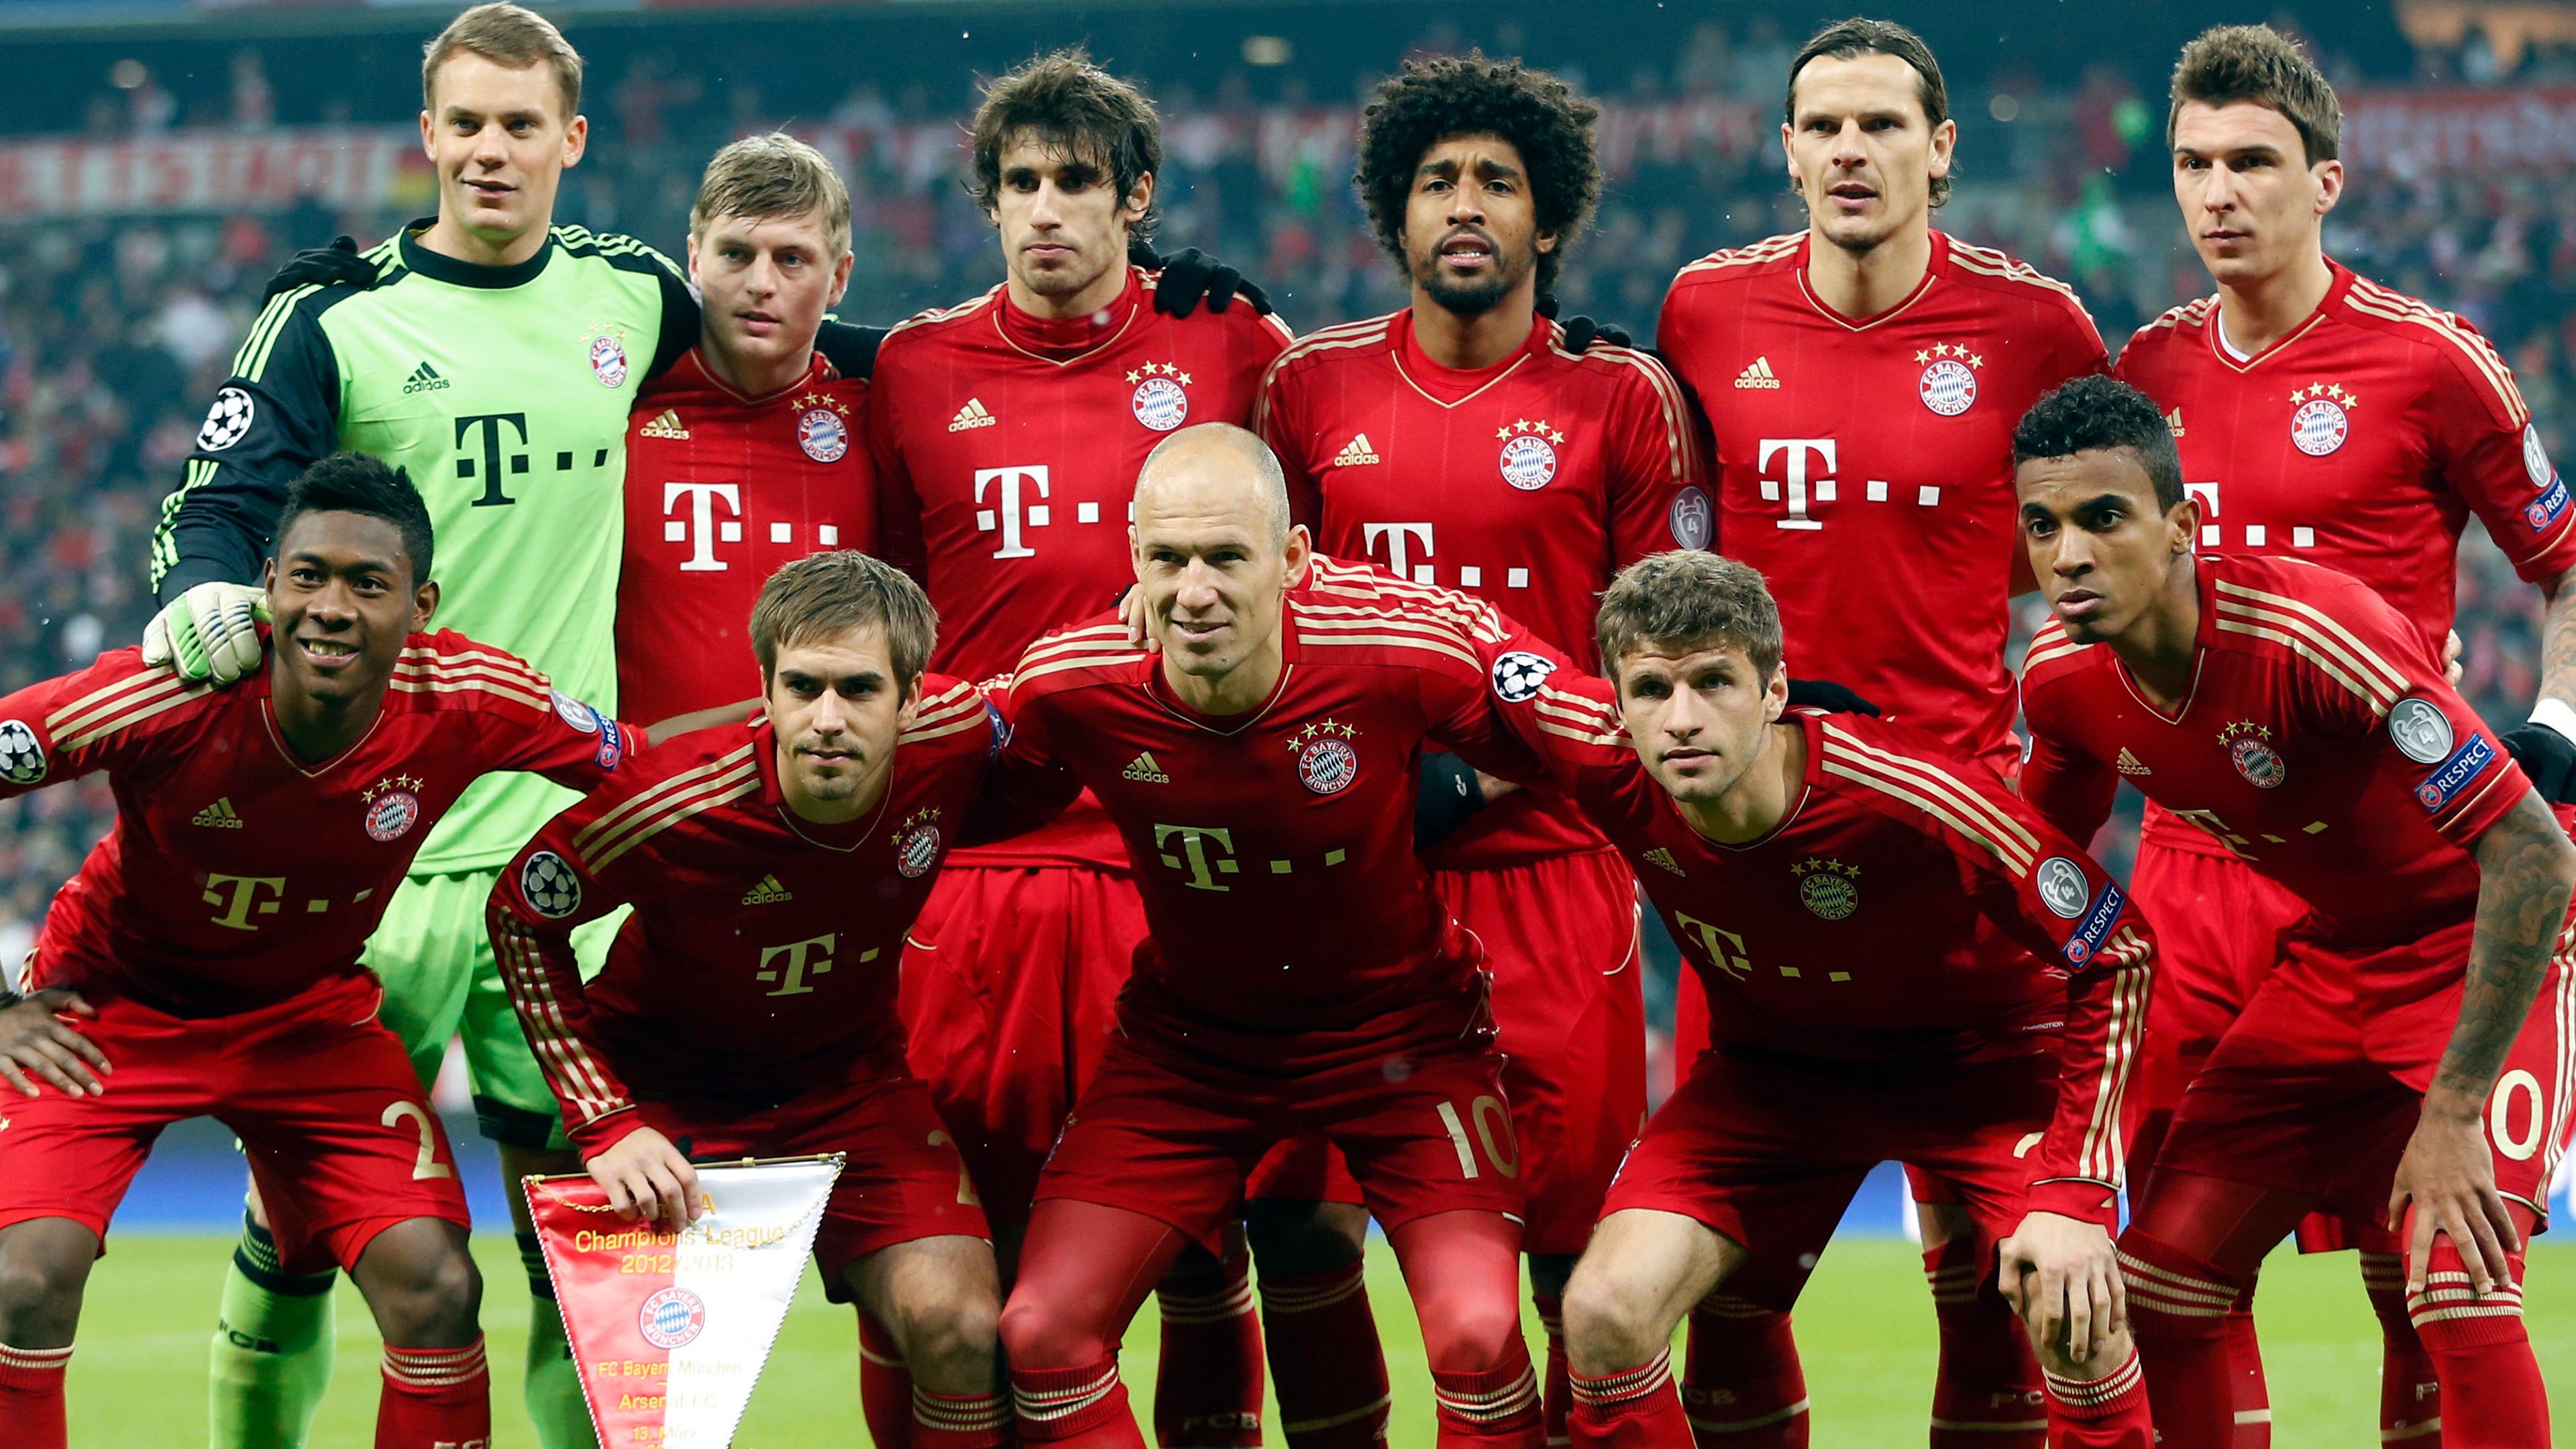 Bayern Munich Champions League 2013 wallpaper